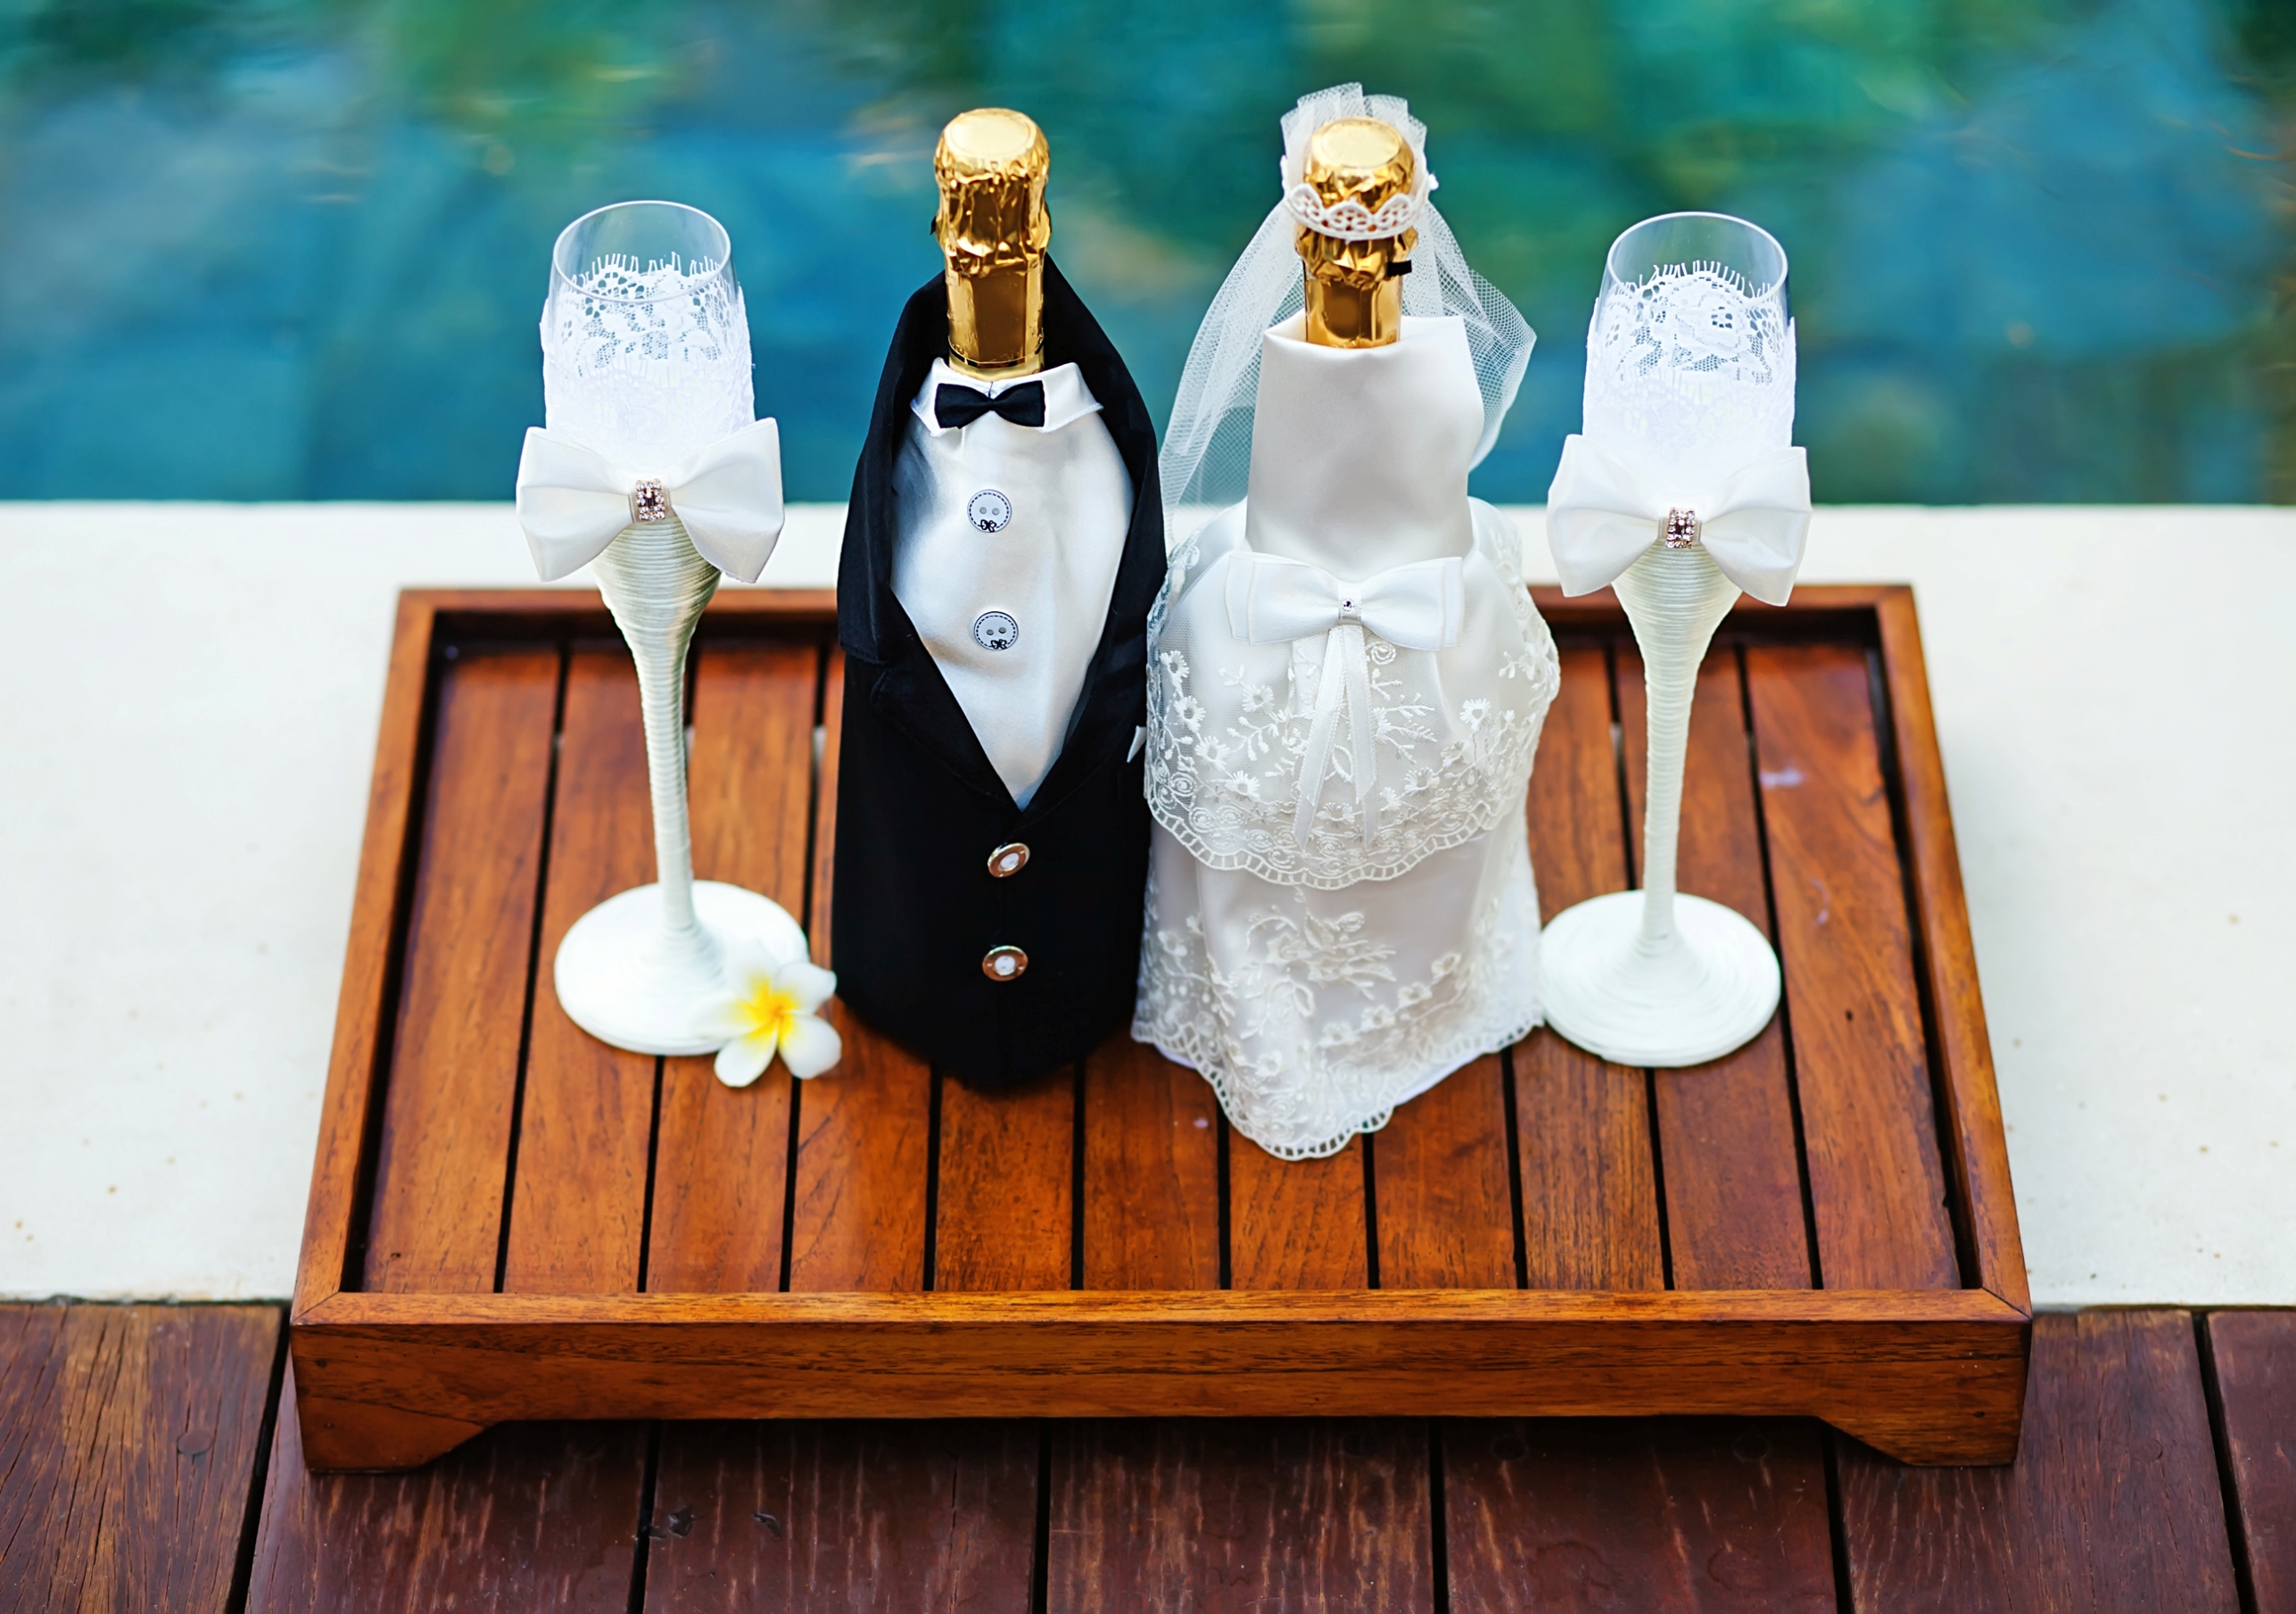 Сюрприз для молодоженов на свадьбу: лучшие идеи, как удивить жениха и невесту